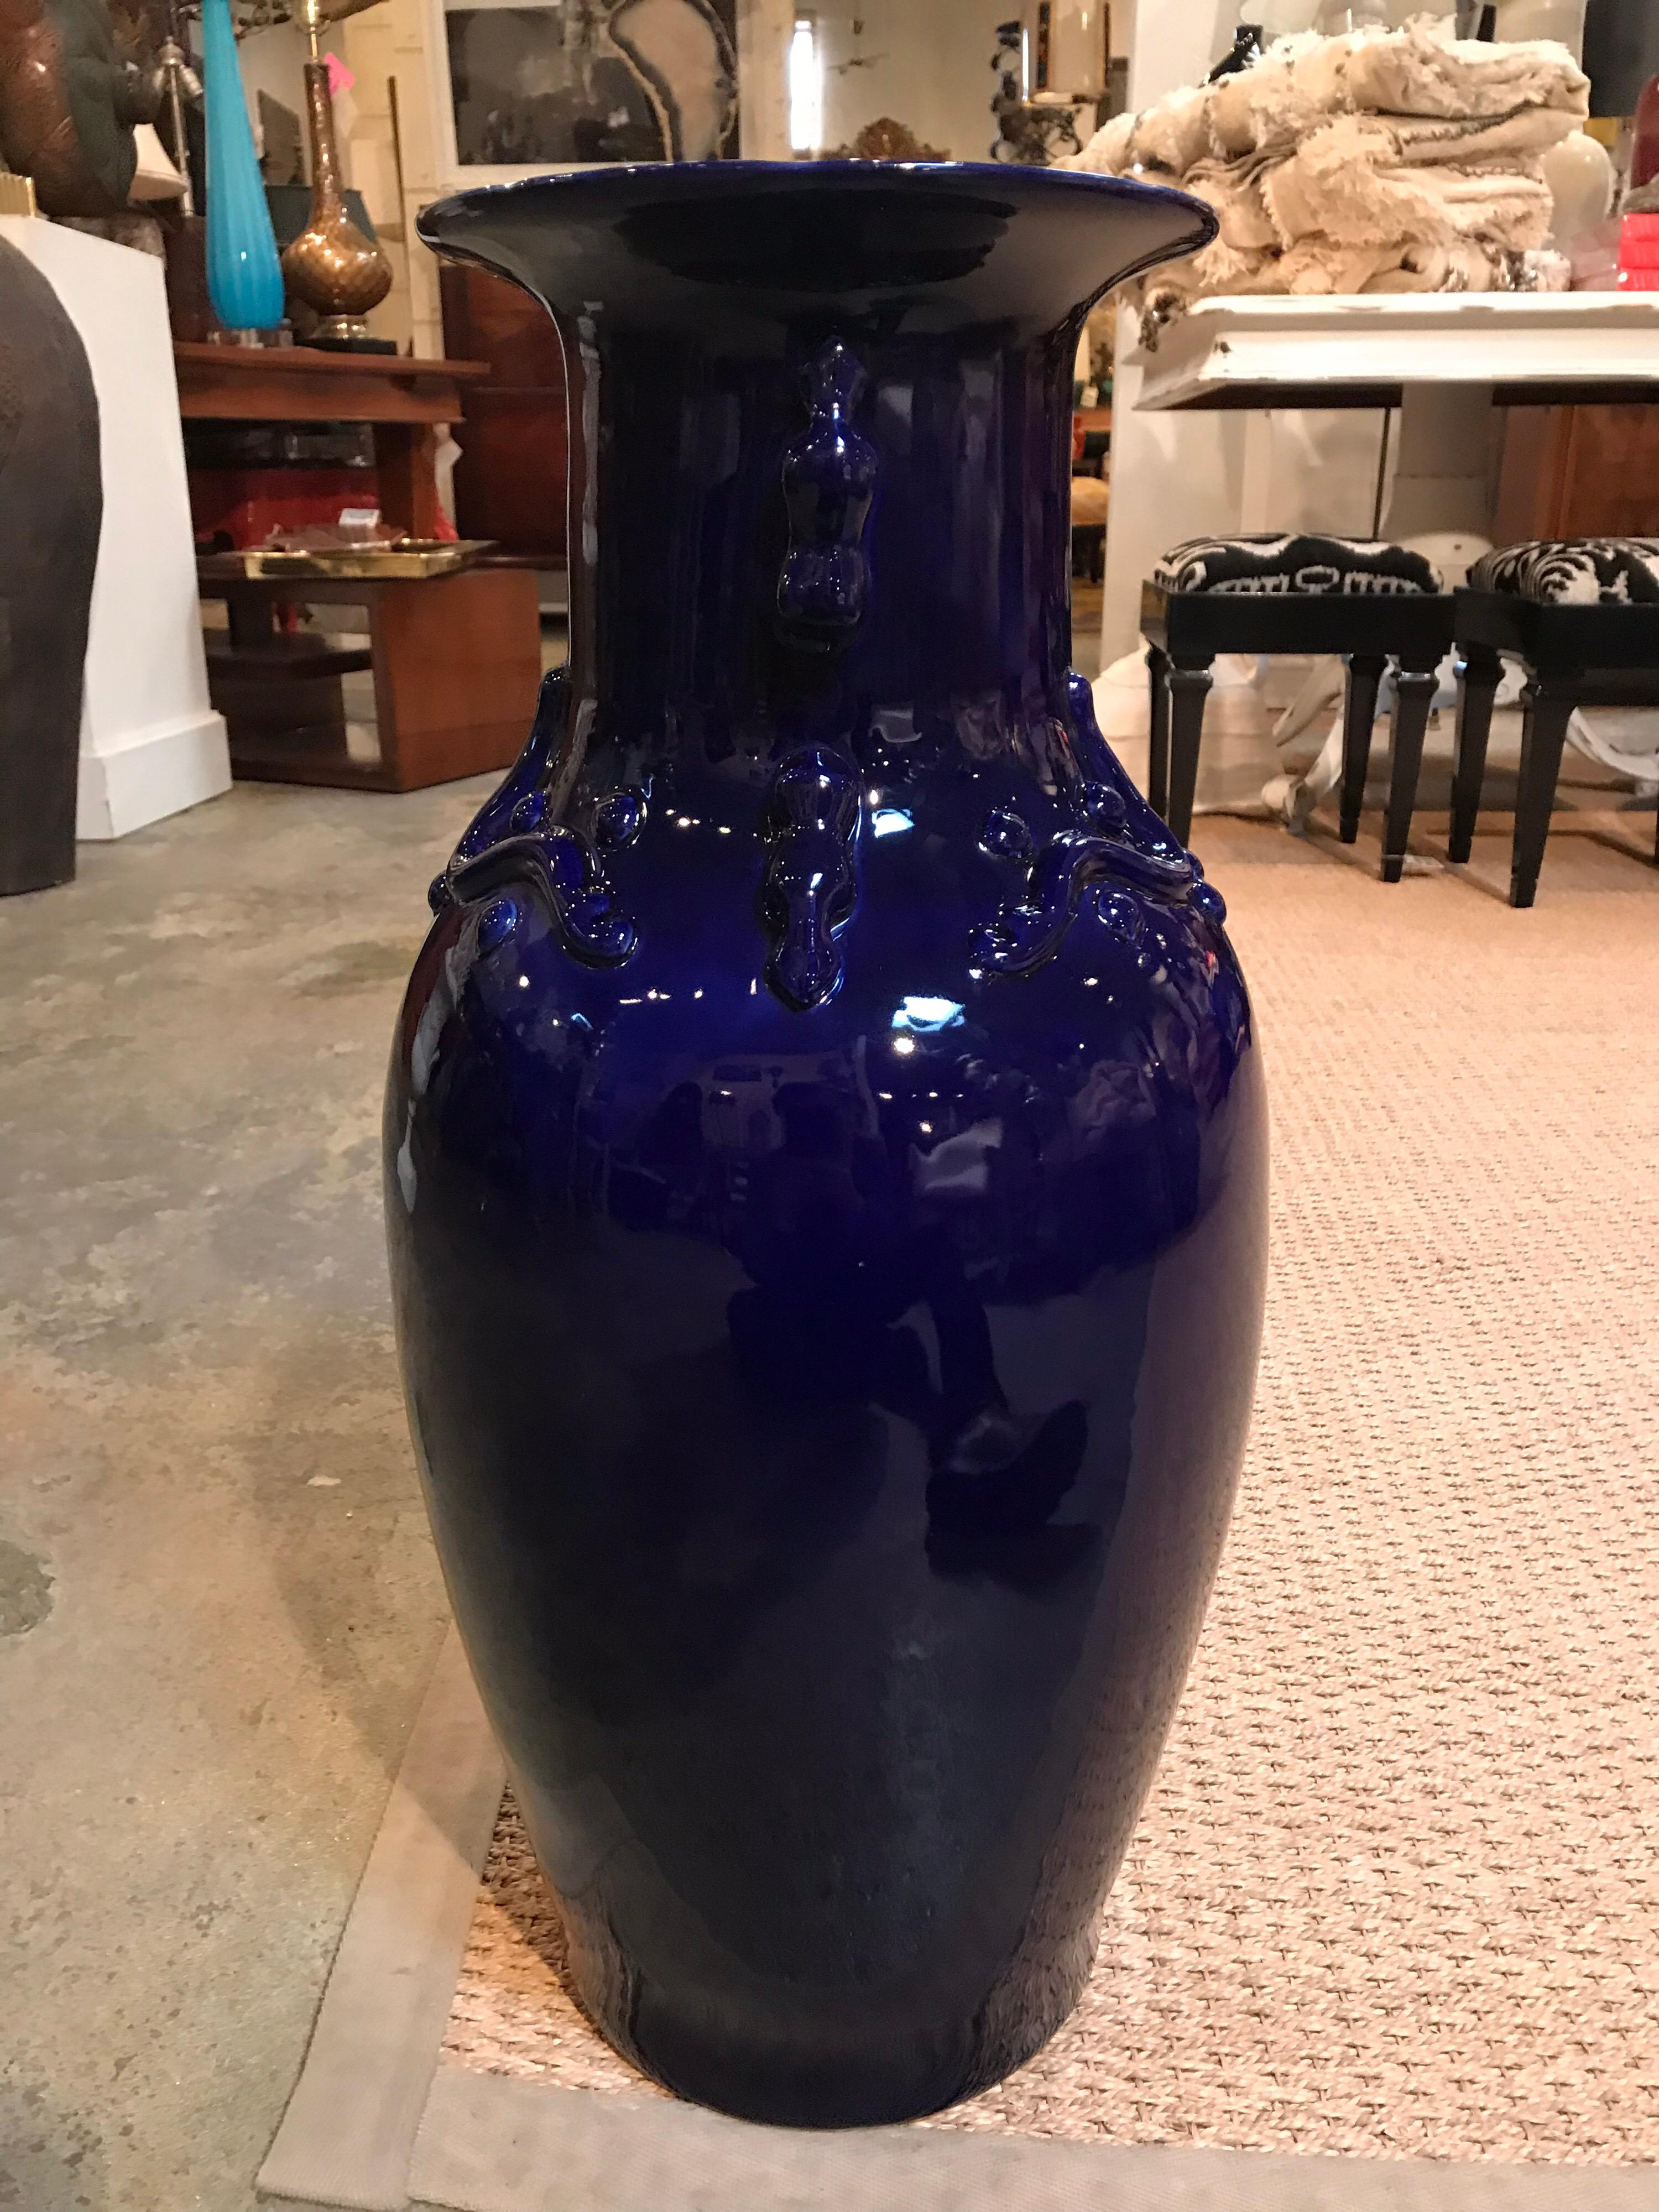 Diese handgefertigte Vase wurde Mitte des 20. Jahrhunderts aus glasierter kobaltblauer Keramik mit dekorativen, erhabenen Formen um den Hals herum hergestellt. Der Gegenstand ist dünn und hohl.